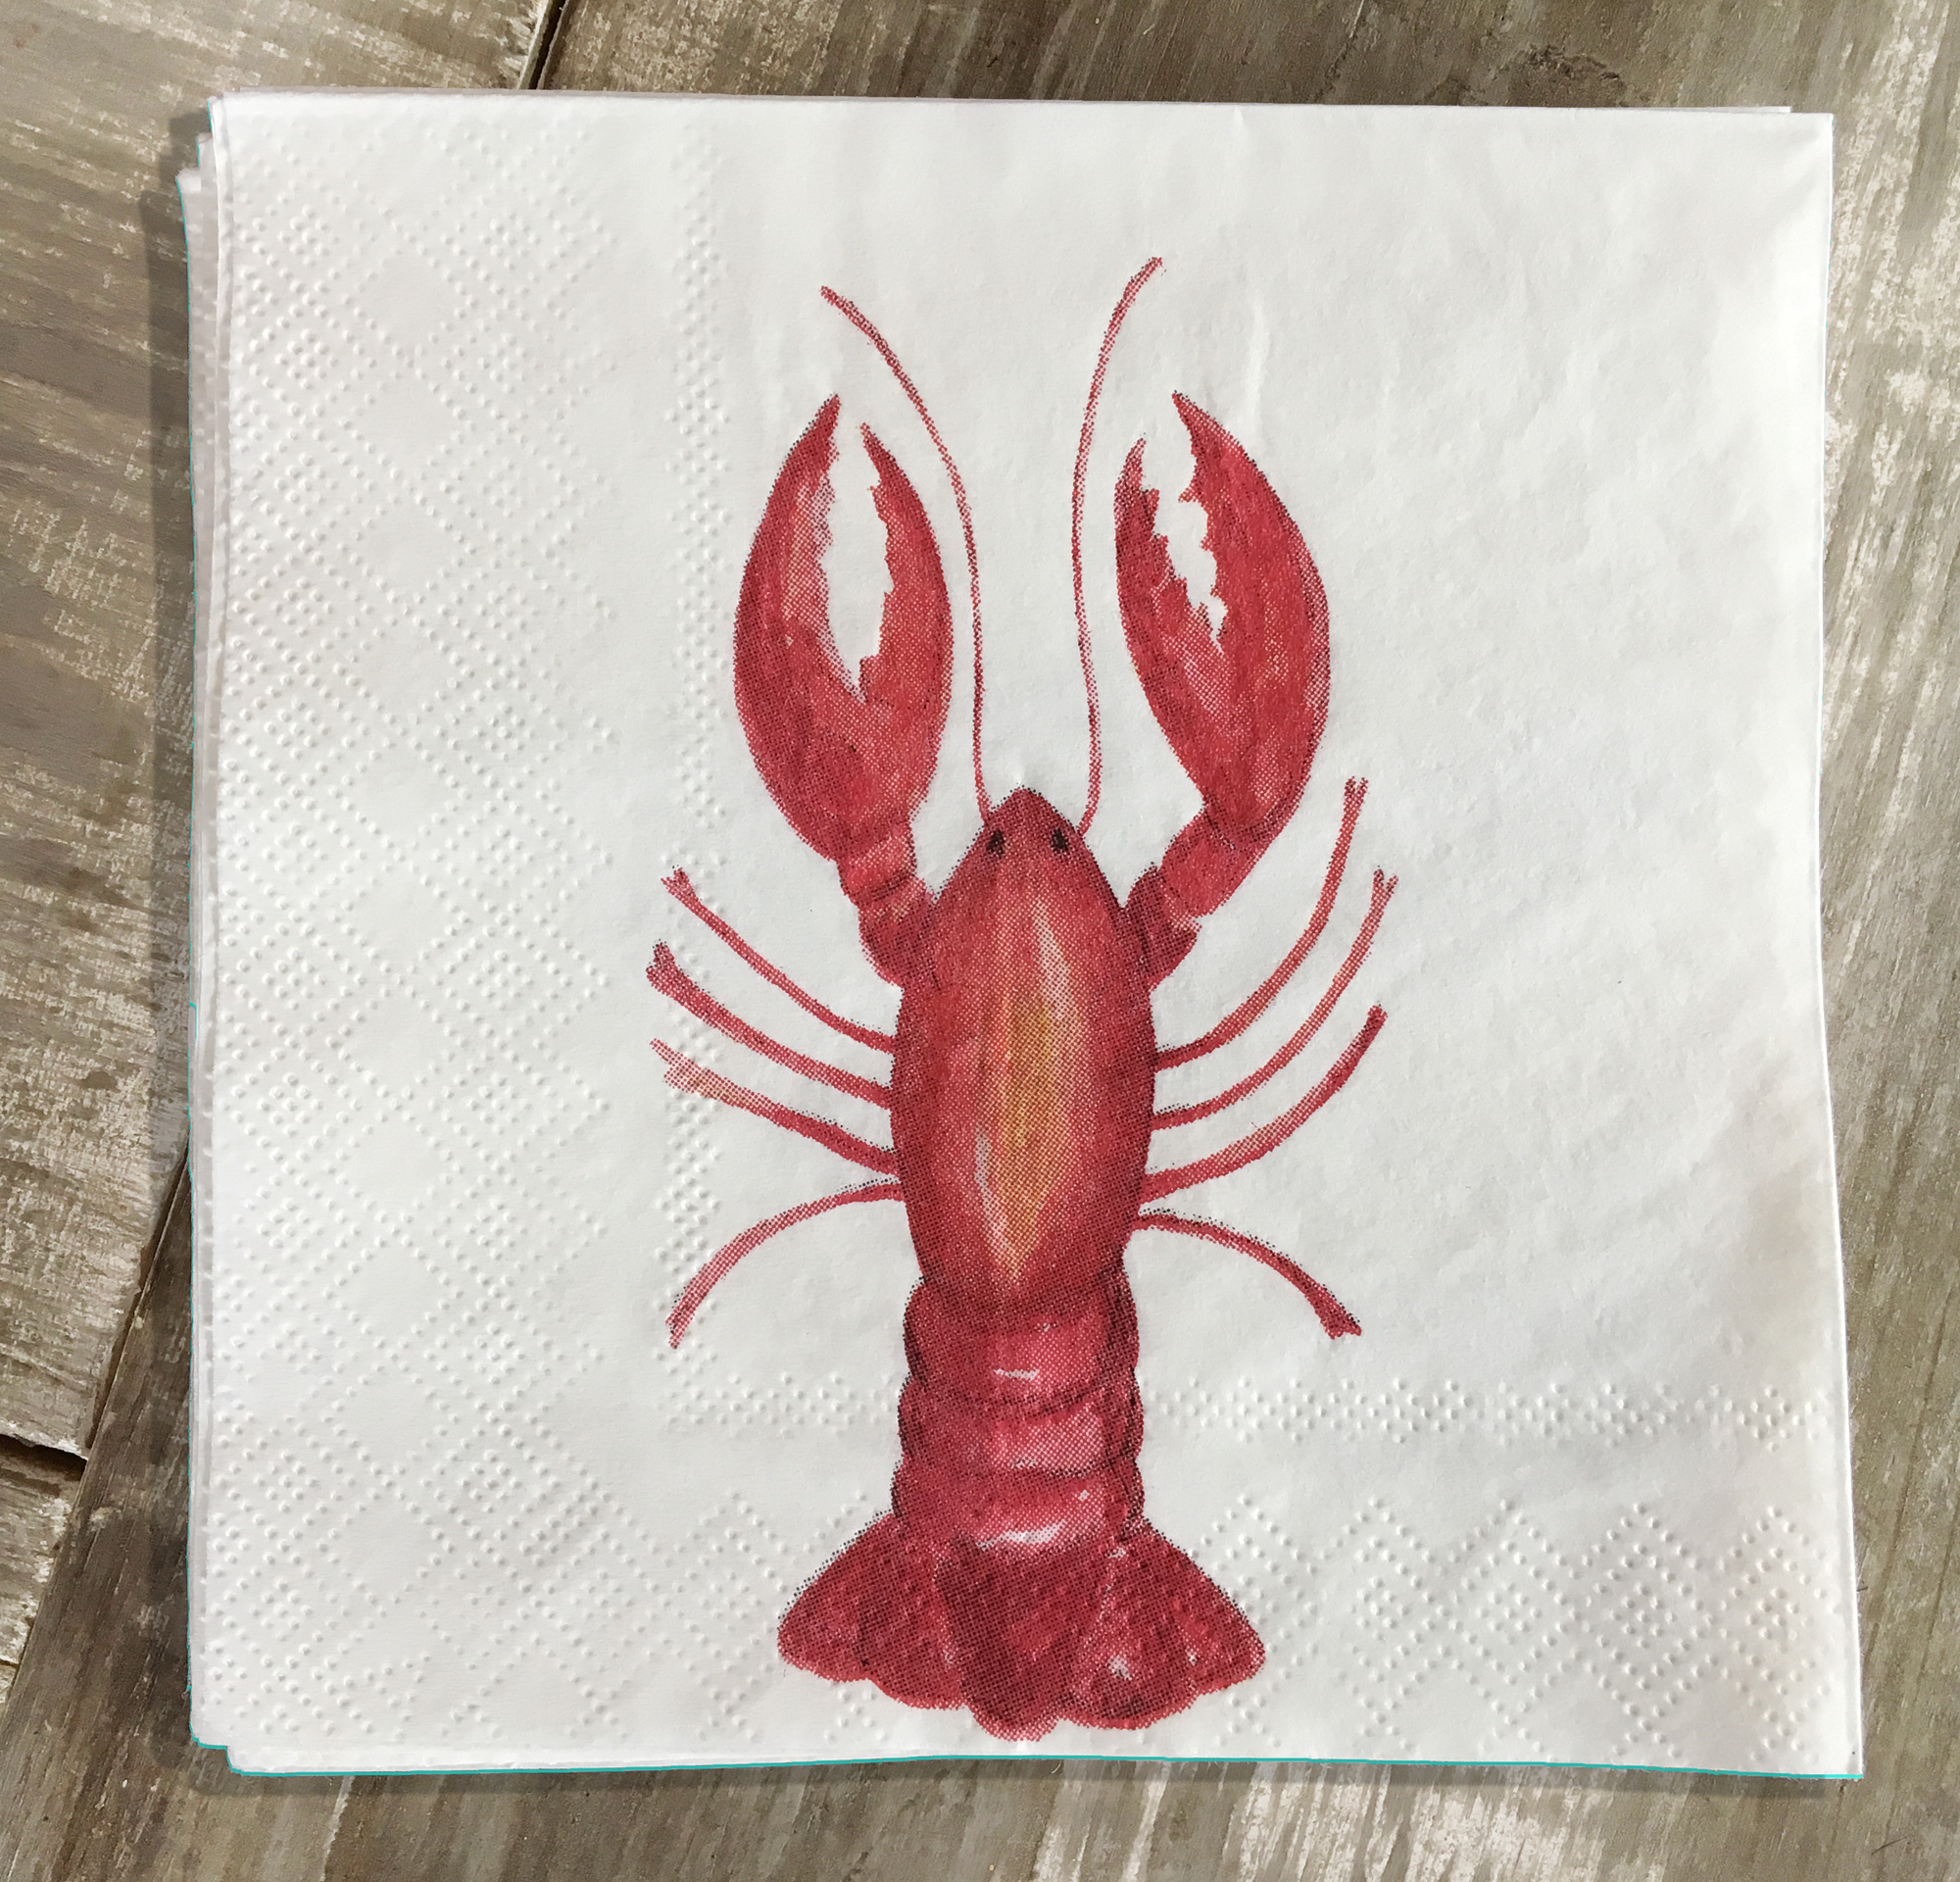 Lobster cocktail napkins